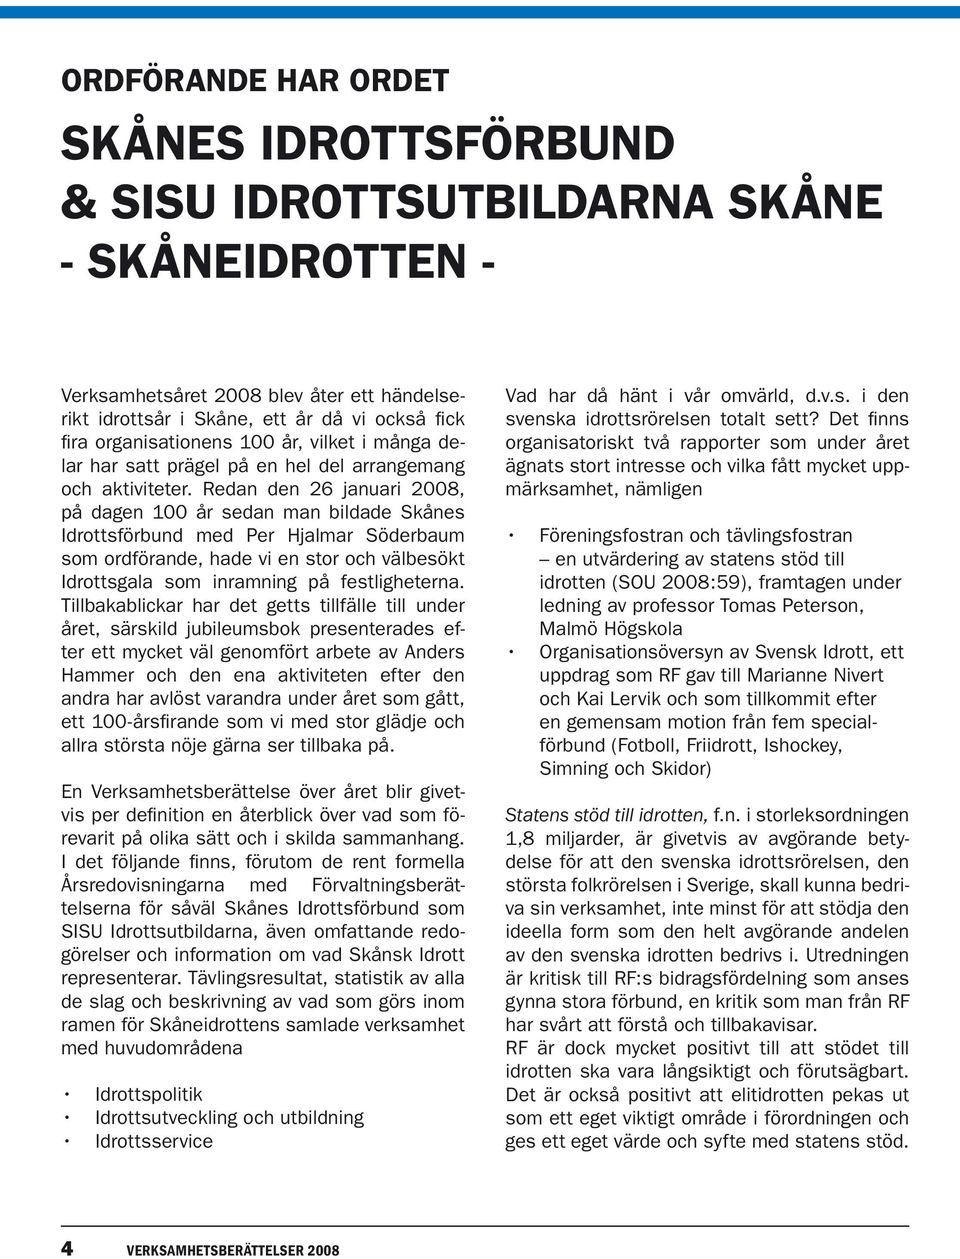 Redan den 26 januari 2008, på dagen 100 år sedan man bildade Skånes Idrottsförbund med Per Hjalmar Söderbaum som ordförande, hade vi en stor och välbesökt Idrottsgala som inramning på festligheterna.